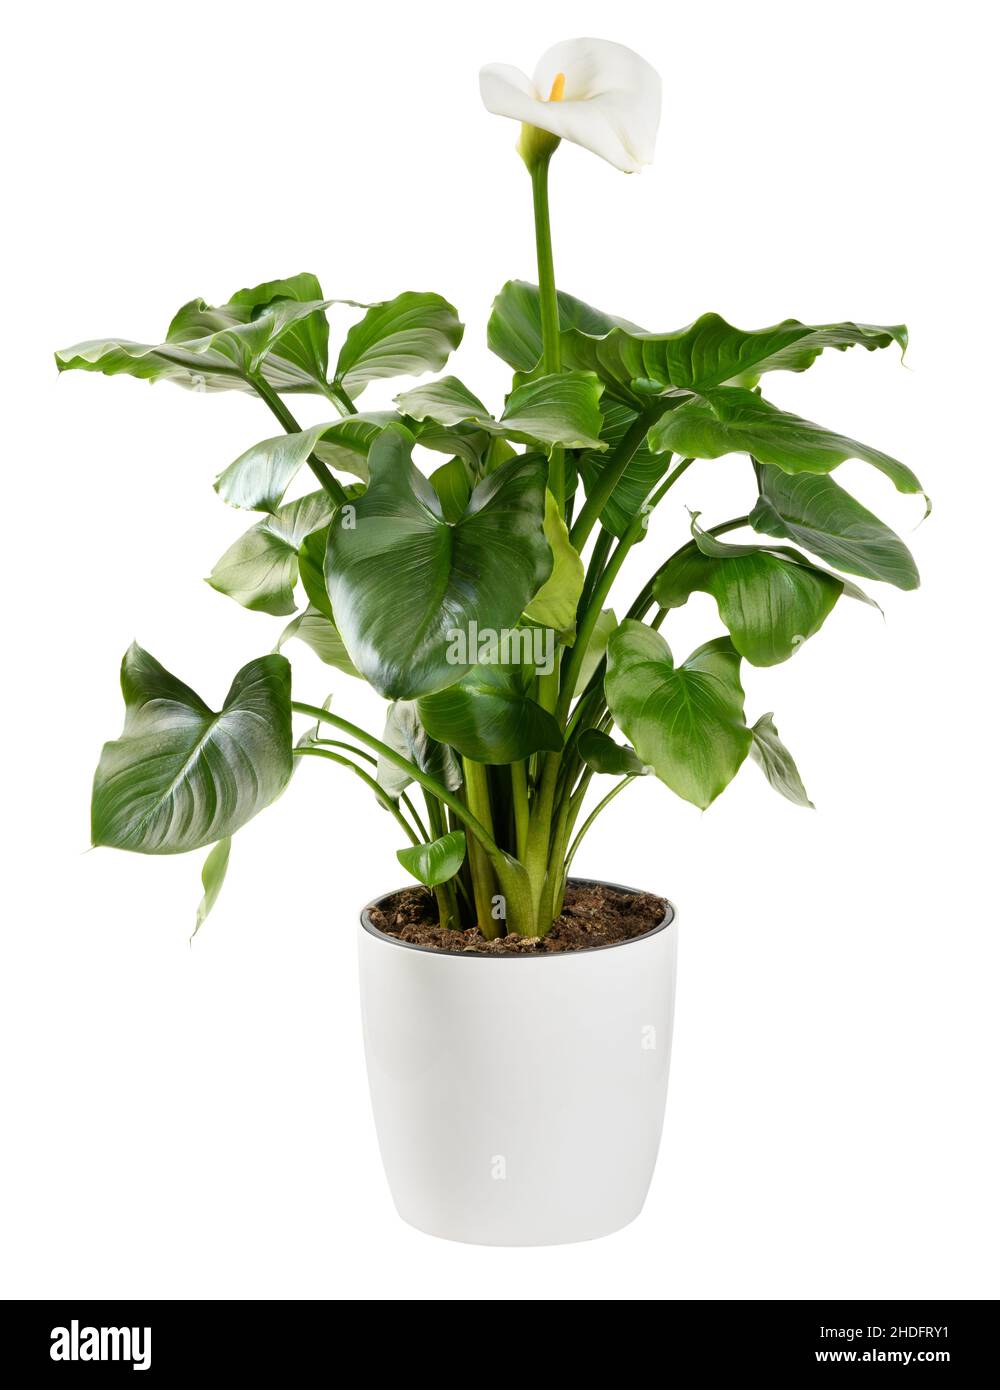 Zimmerpflanze, Topfpflanze, Calla, Zimmerpflanzen, Topfpflanzen, callas  Stockfotografie - Alamy